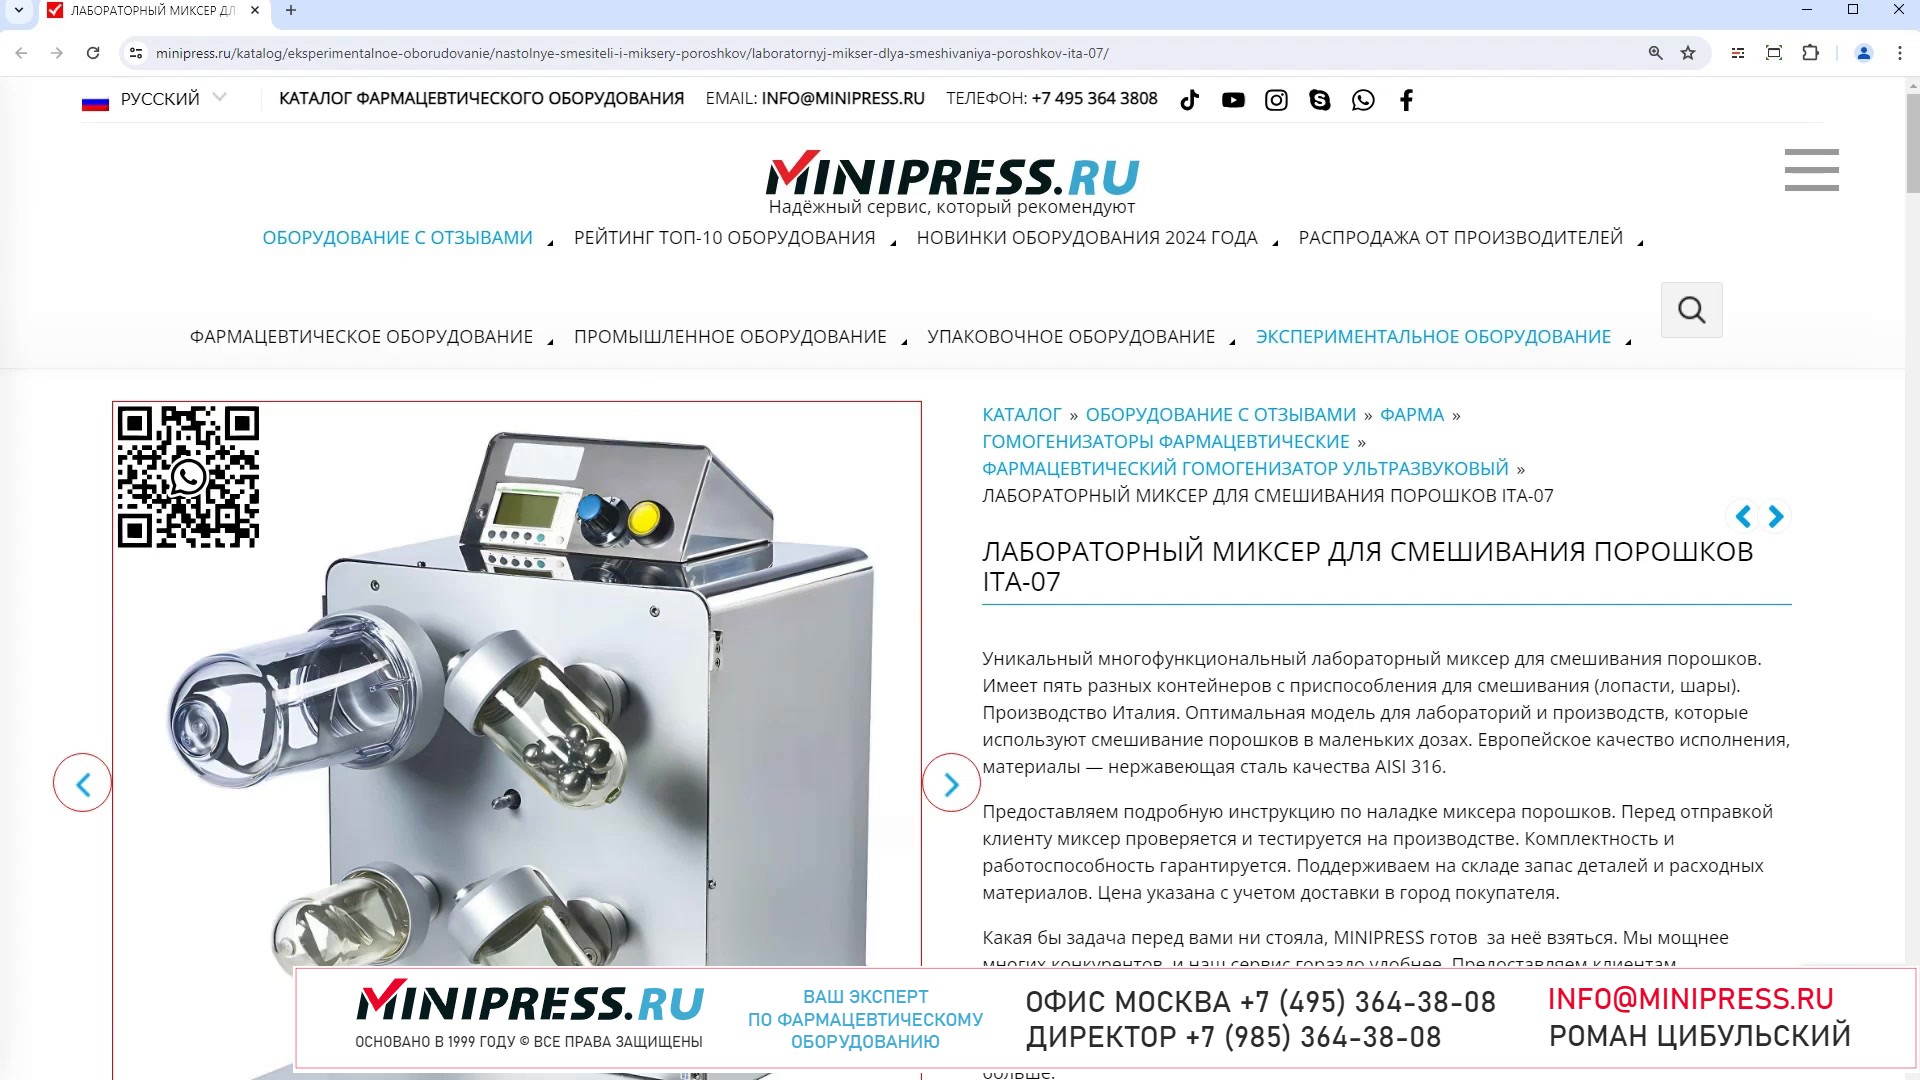 Minipress.ru Лабораторный миксер для смешивания порошков ITA-07